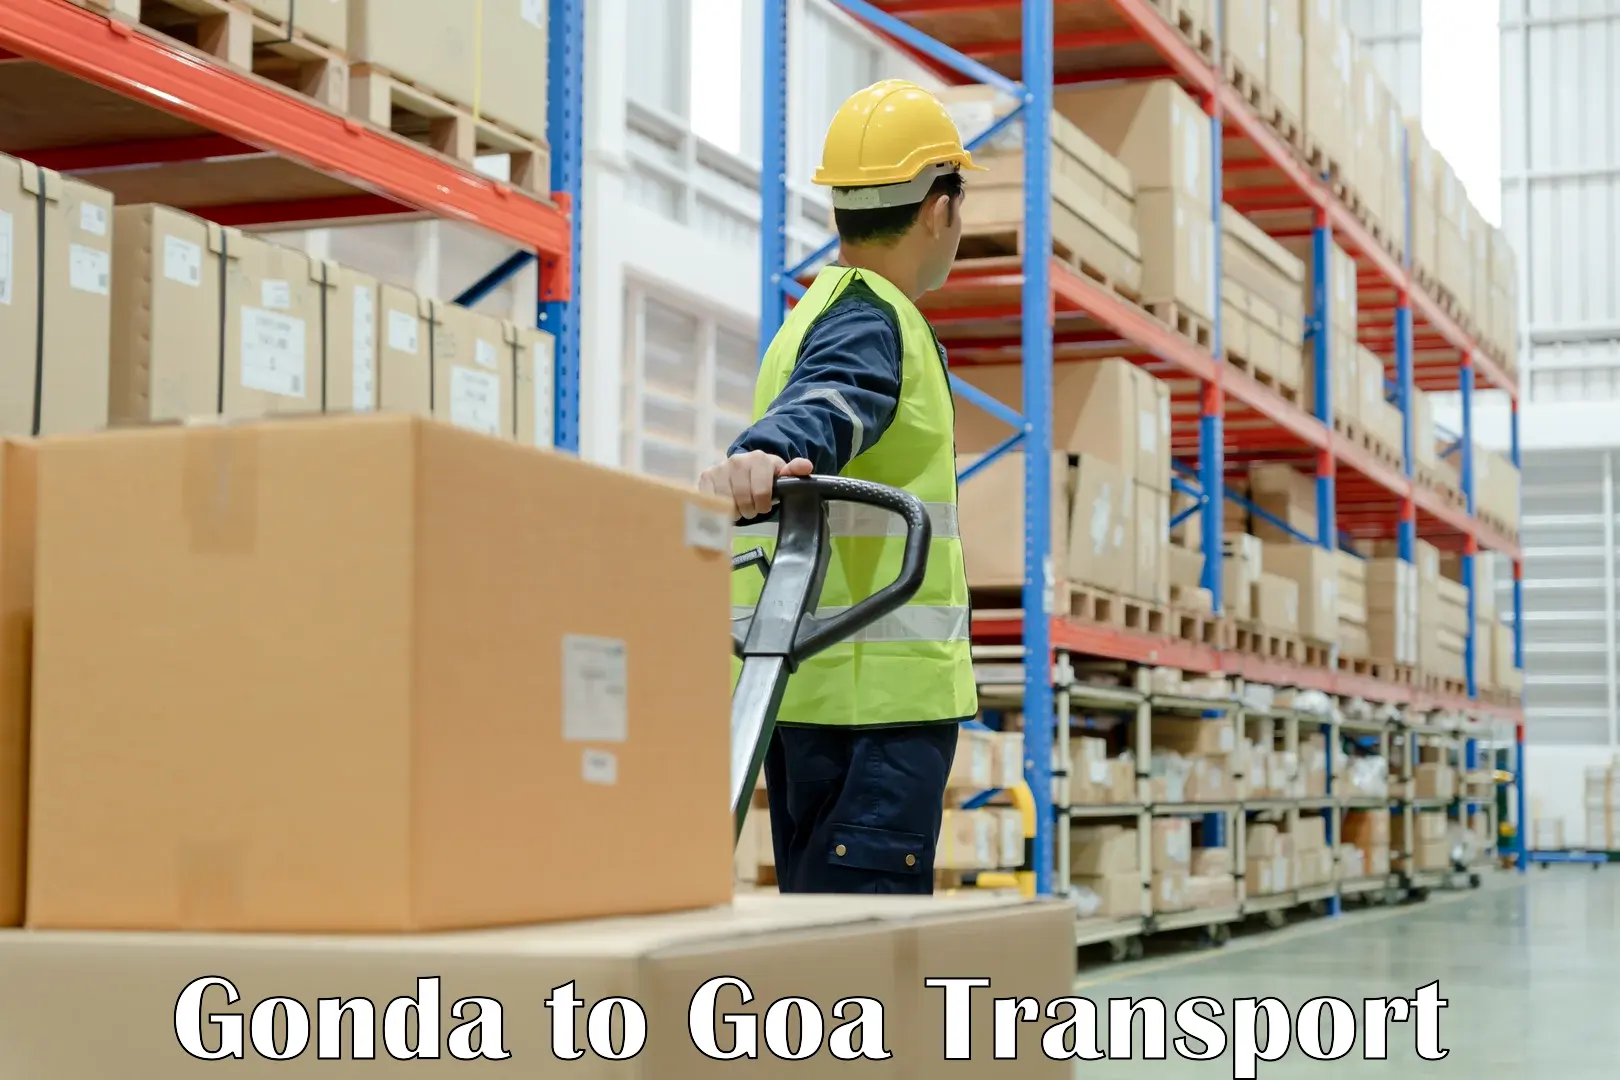 Transport in sharing Gonda to Bardez